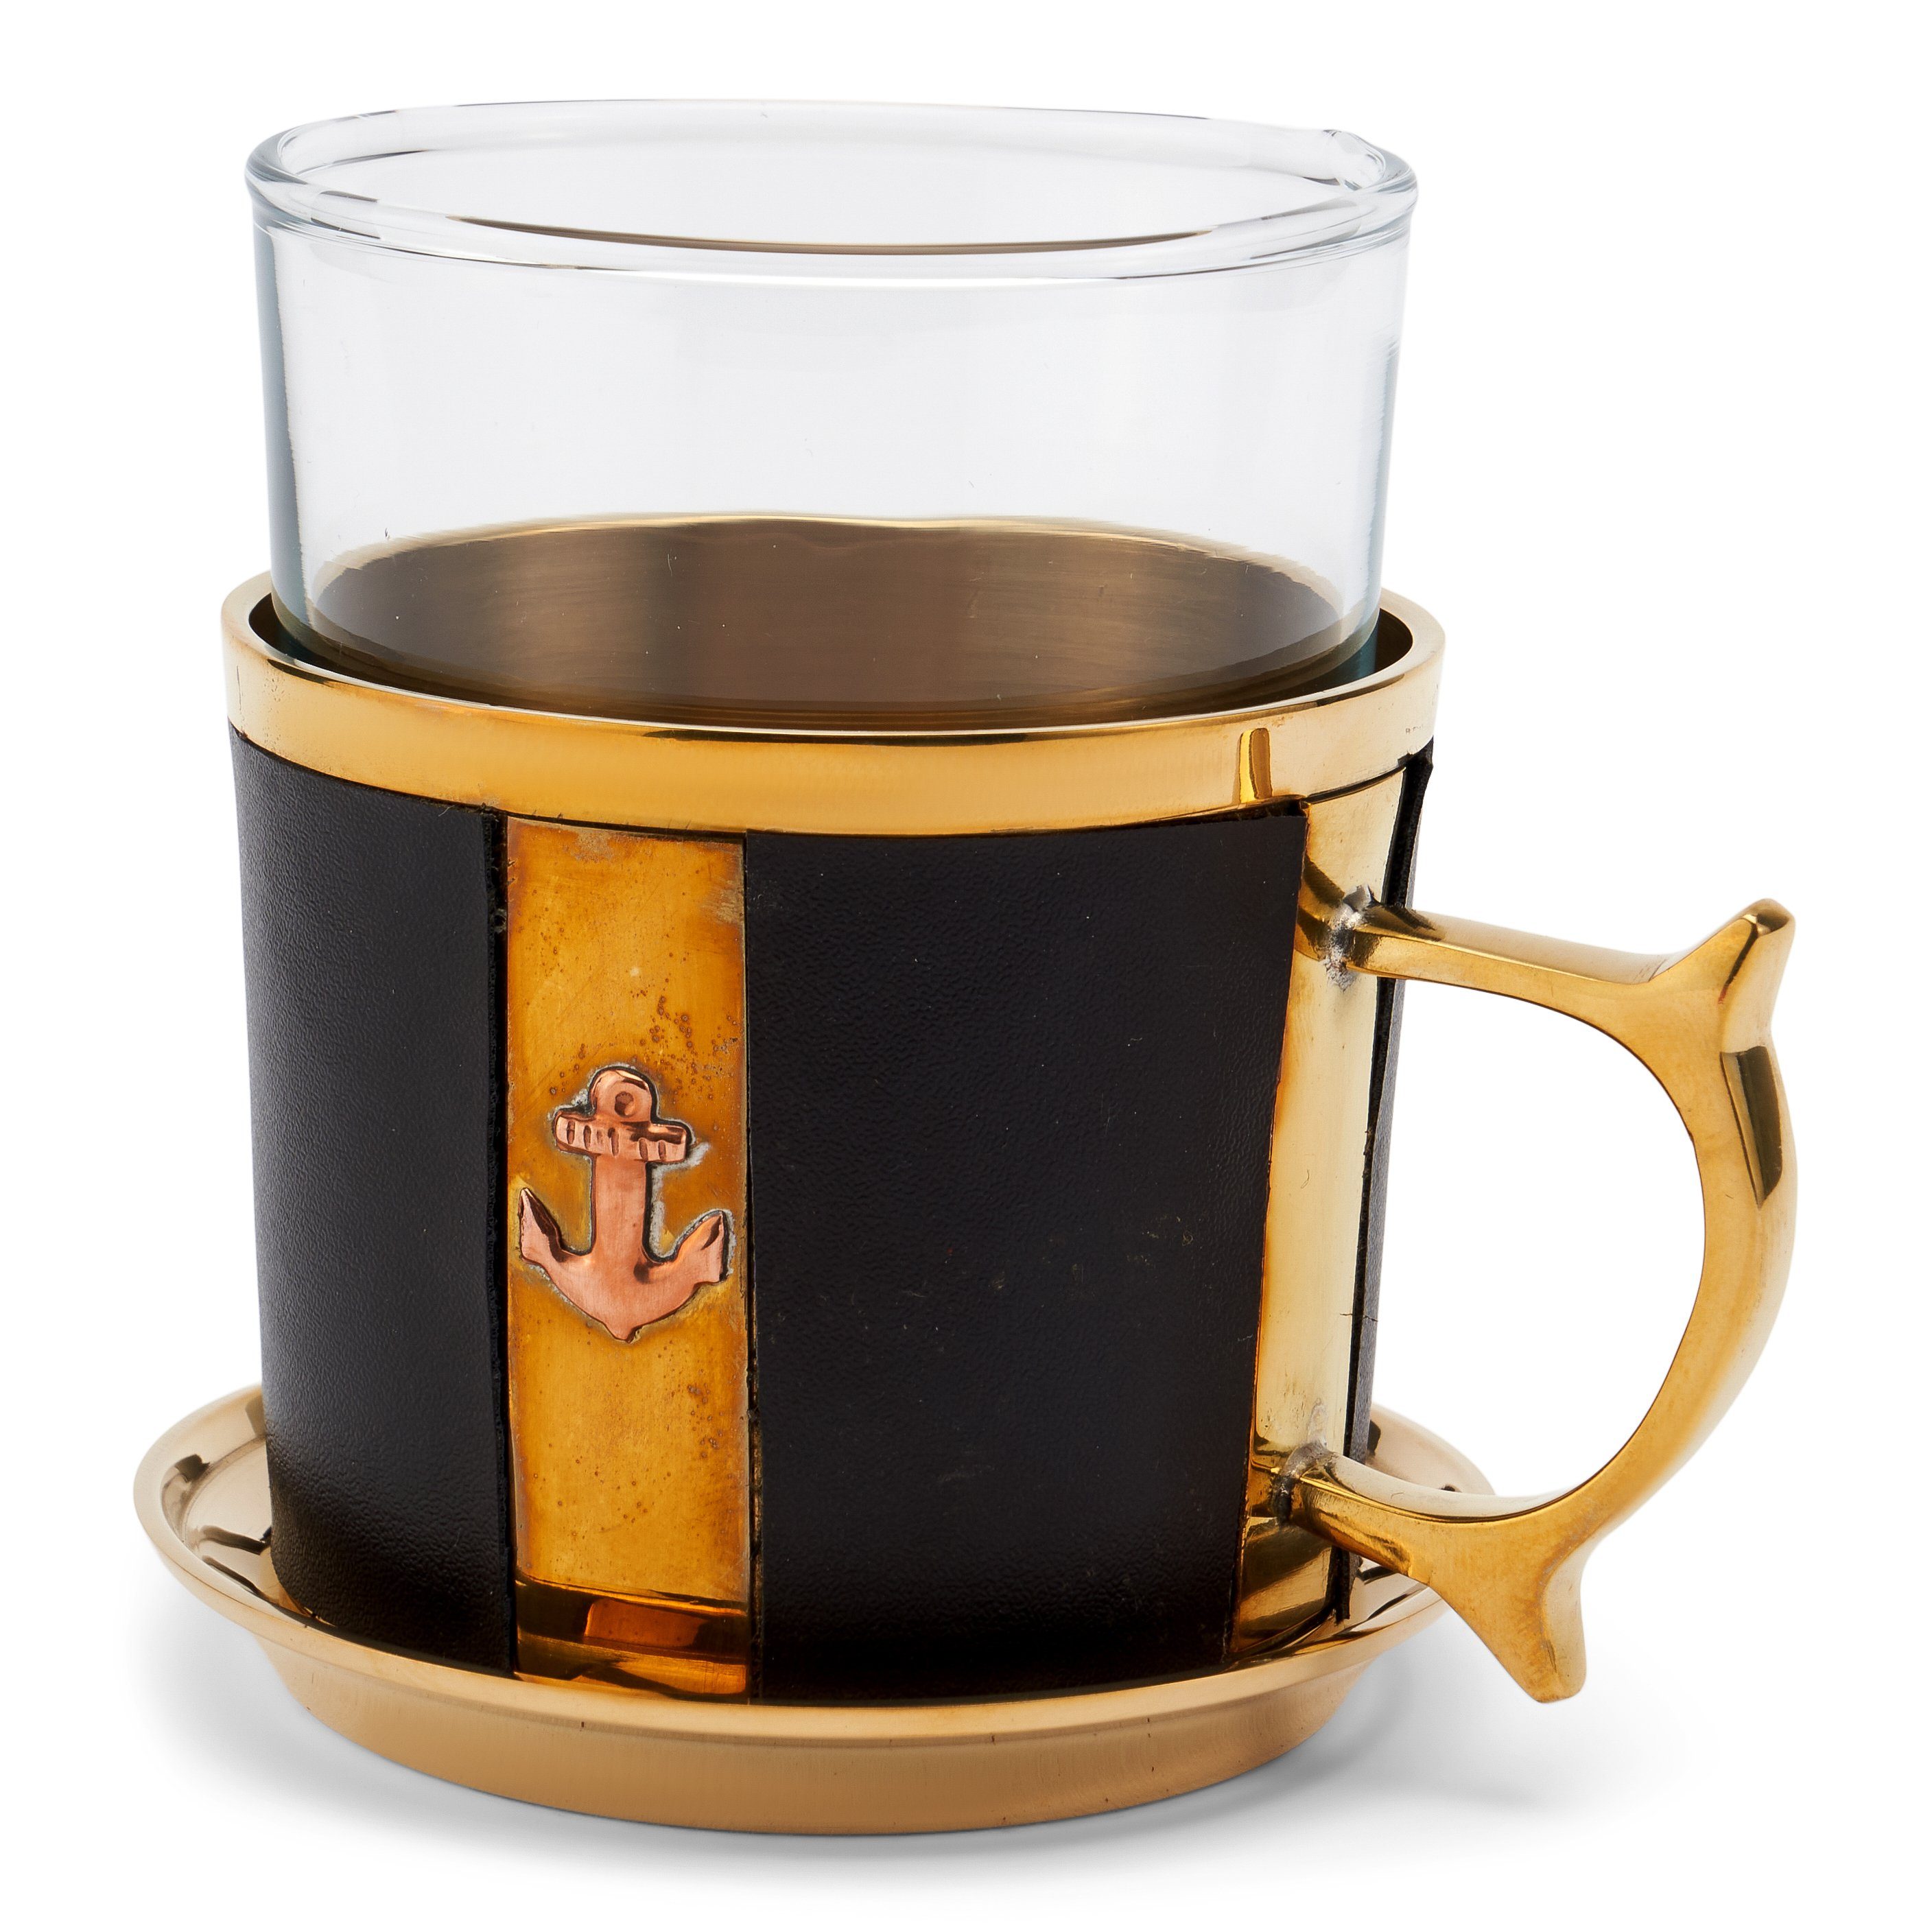 NKlaus Dekofigur Maritim Tee-Set mit Glas und Untersetzer 9cm aus Messing gold und Lede, Made in Germany